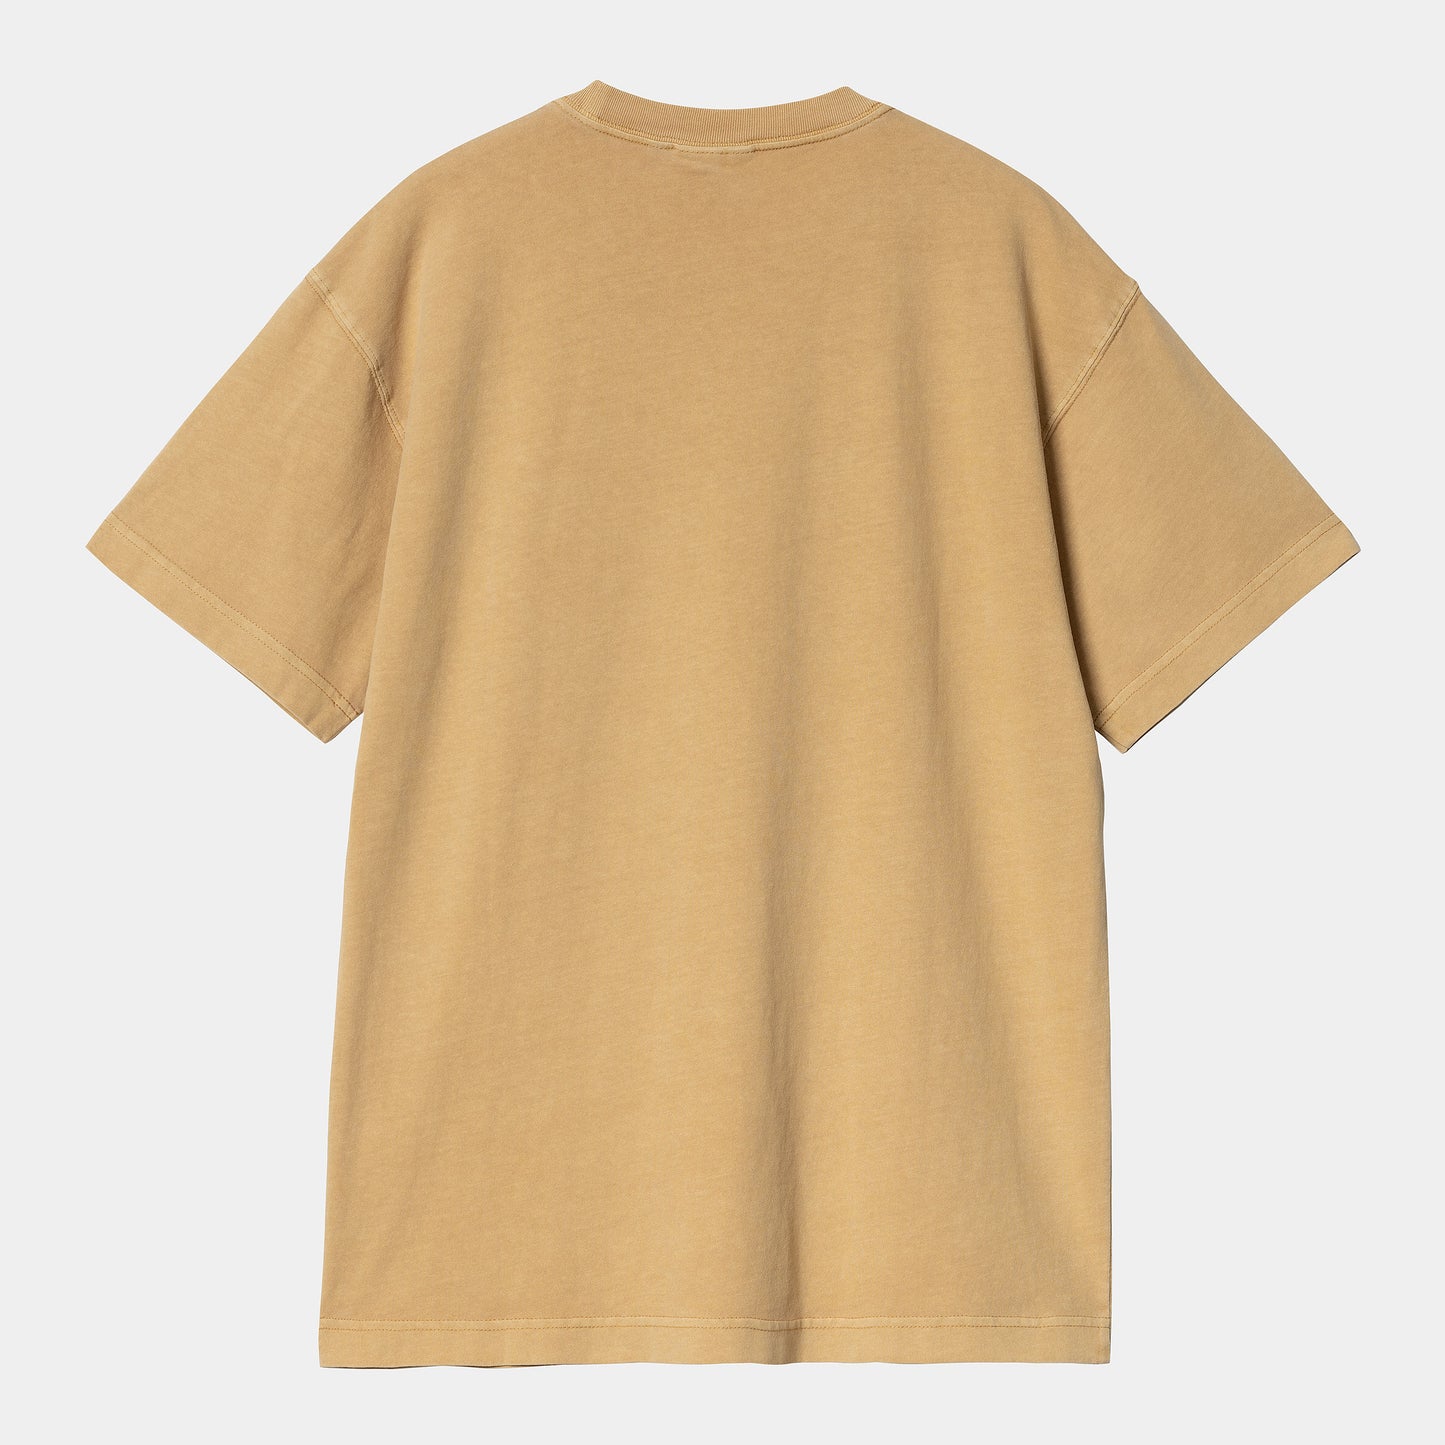 CARHARTT WIP S/S Nelson T-Shirt - Bourbon (garment dyed)